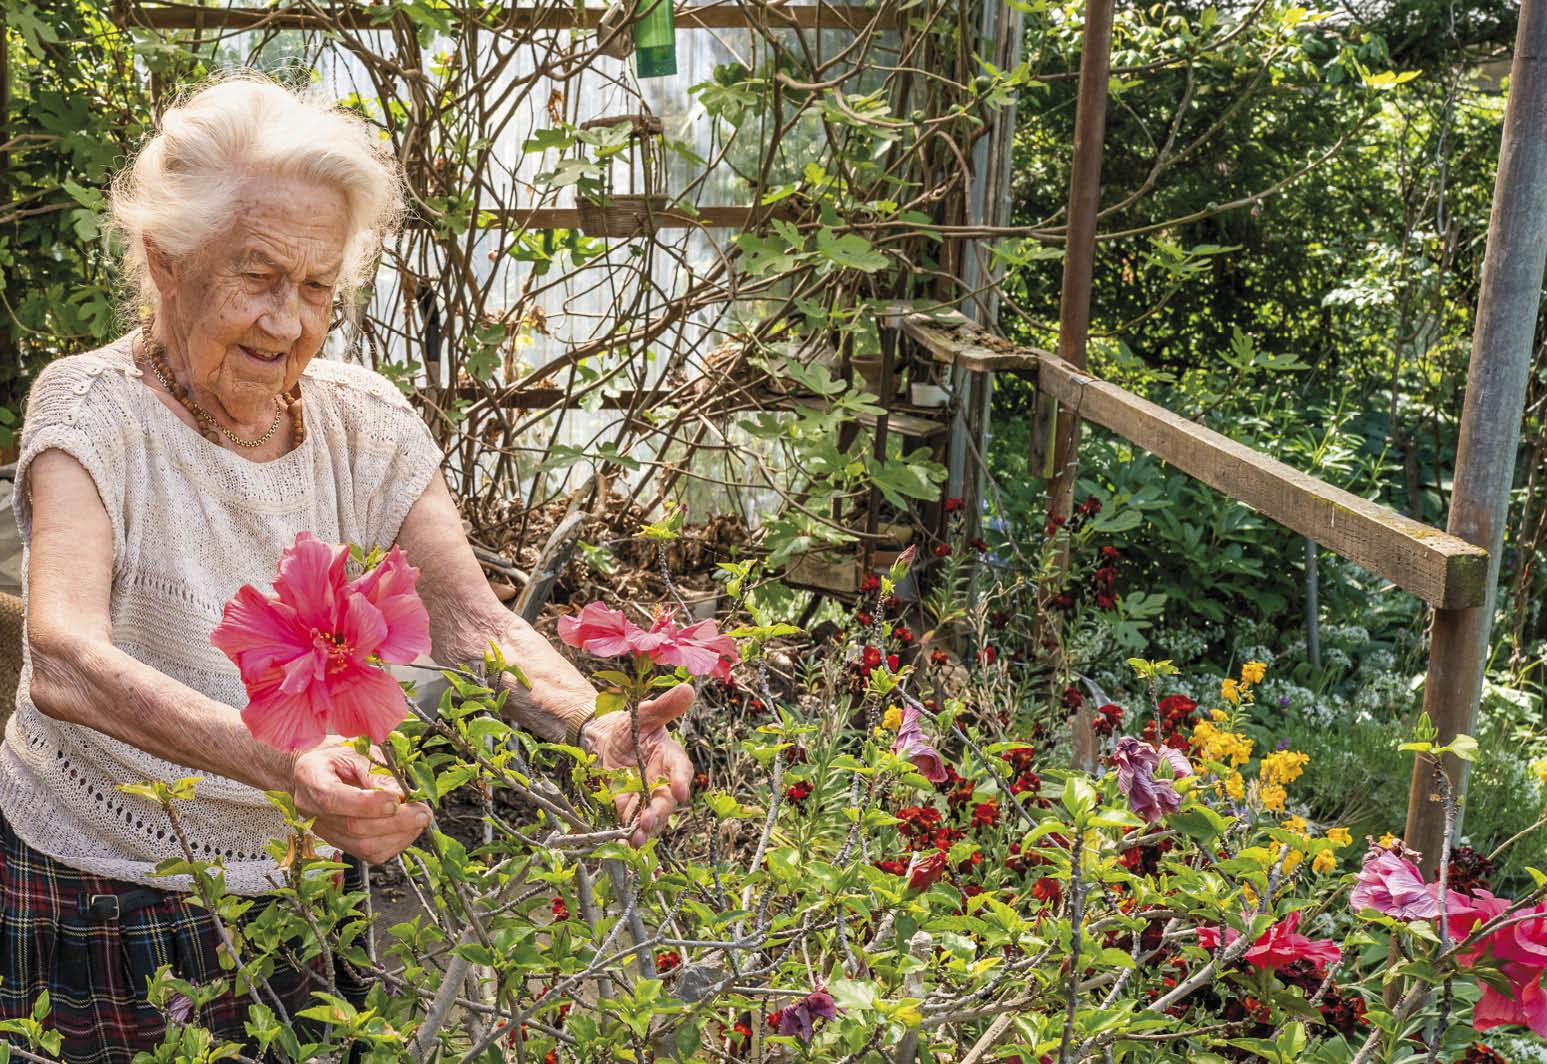 Gunna Amalie Hansen, der nærmer sig 100 år, og som har passet og plejet sin hibiscus-plante i over 40 år, måtte imponeret over plantens tidlige blomstring midt i maj tilkalde avisens fotograf, så alle kunne få det flotte syn at se. Foto: TorbenStender.